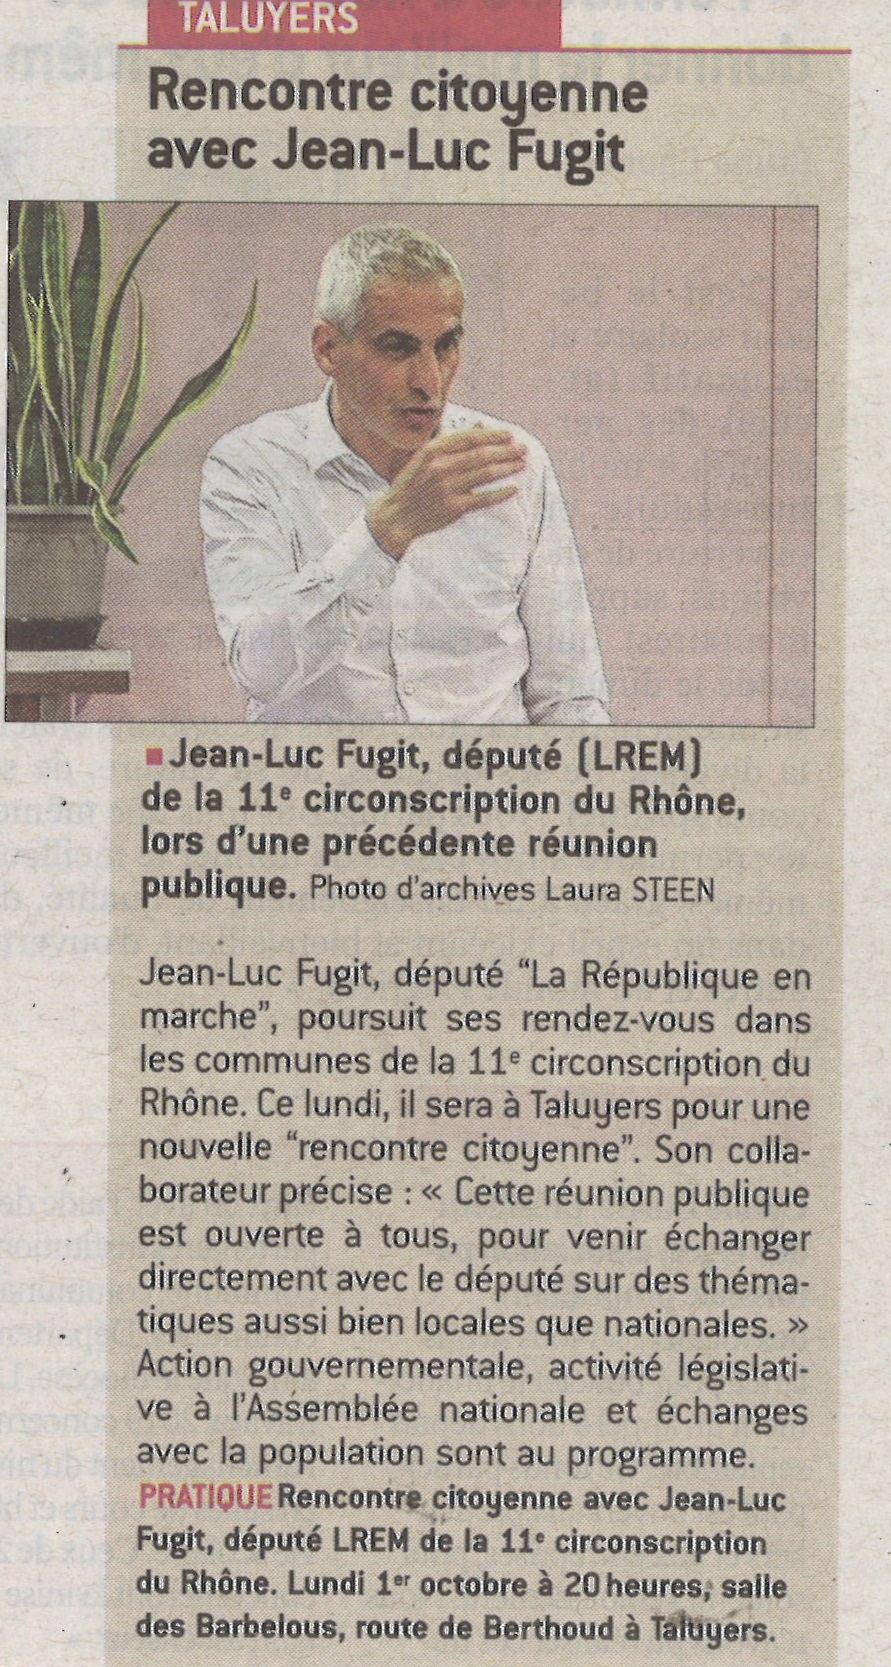 Rencontre citoyenne avec Jean-Luc Fugit